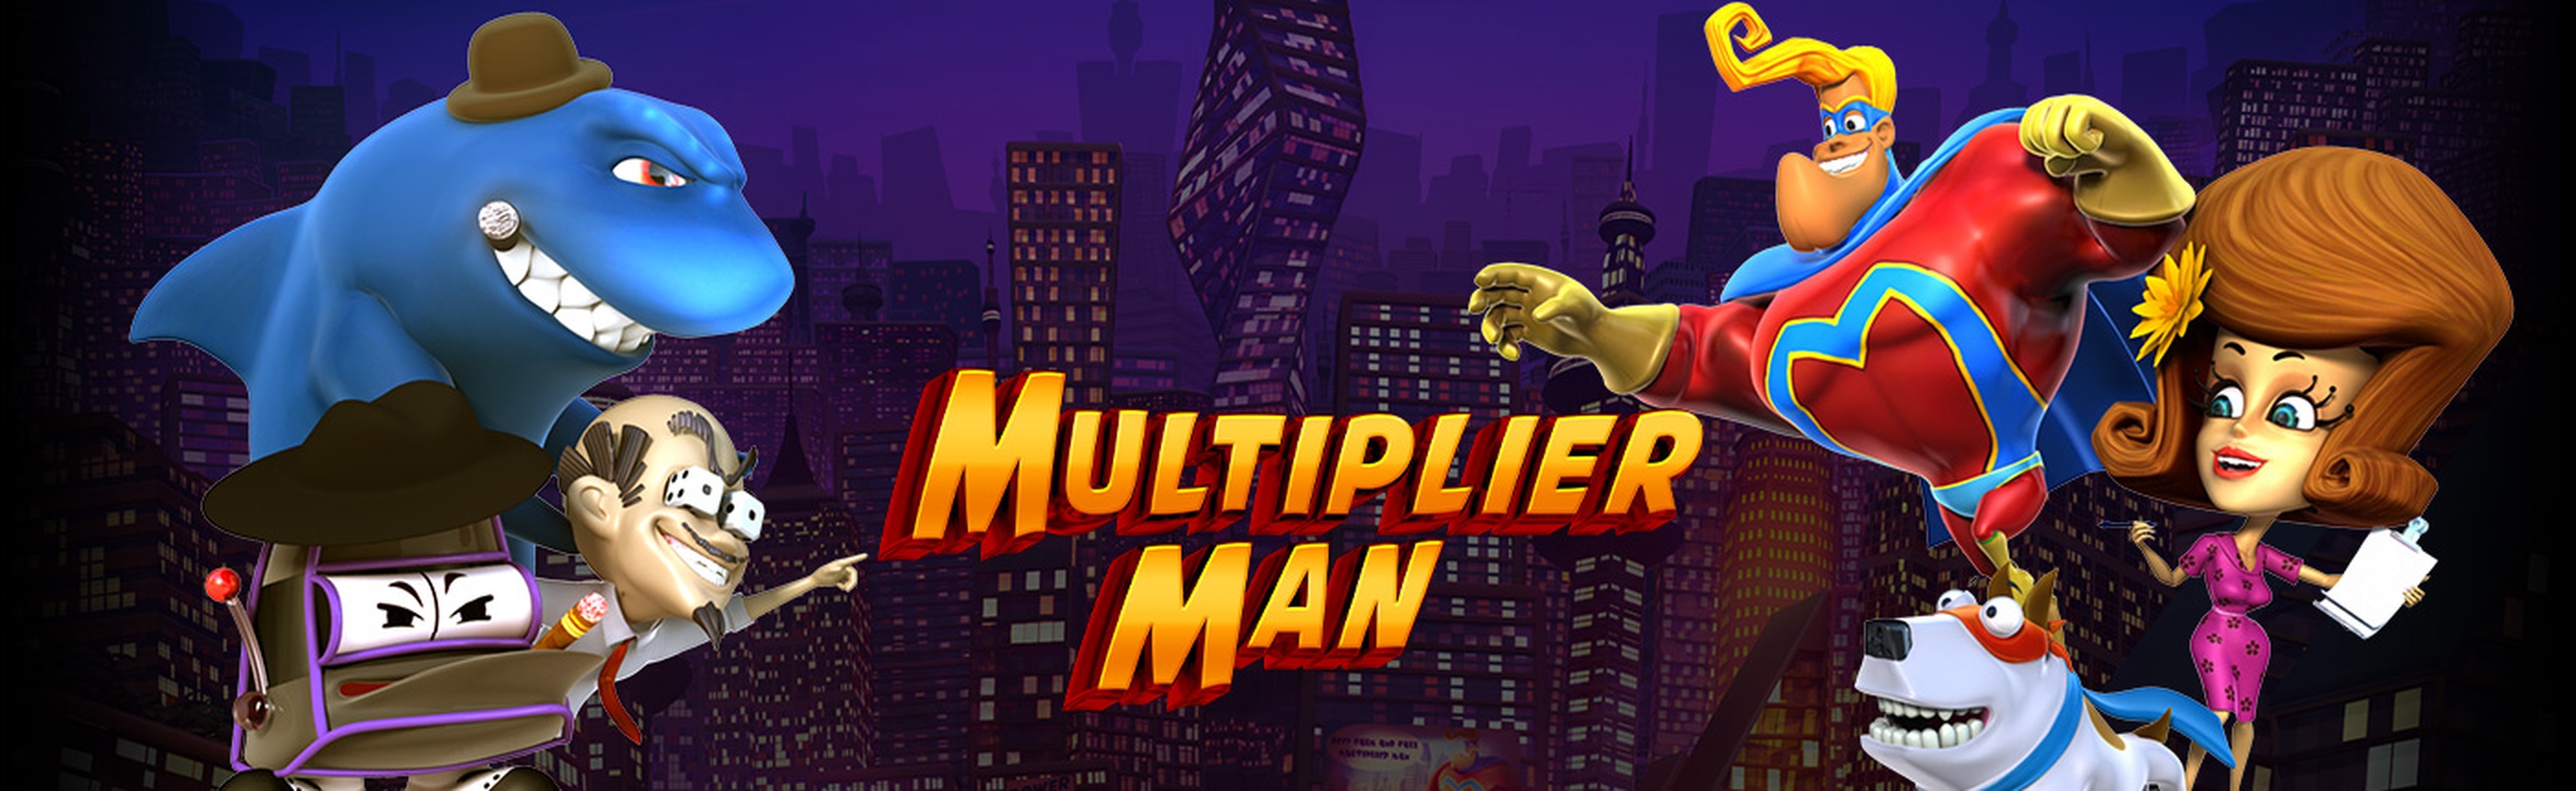 Multiplier Man demo